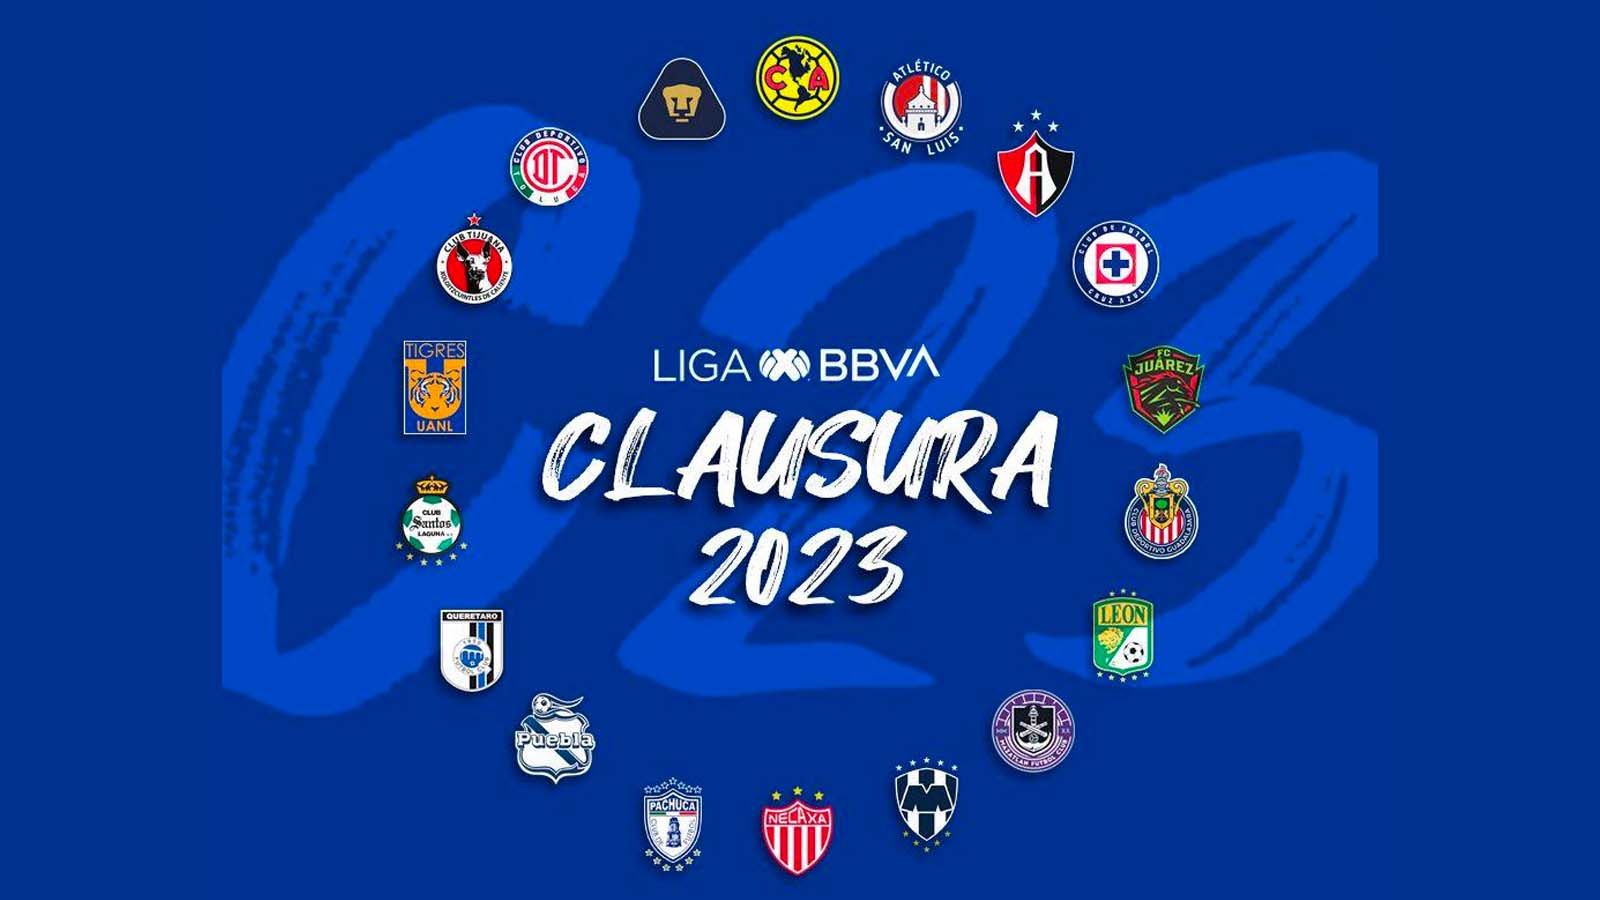 CD Universitario - Players, Ranking and Transfers - 2023